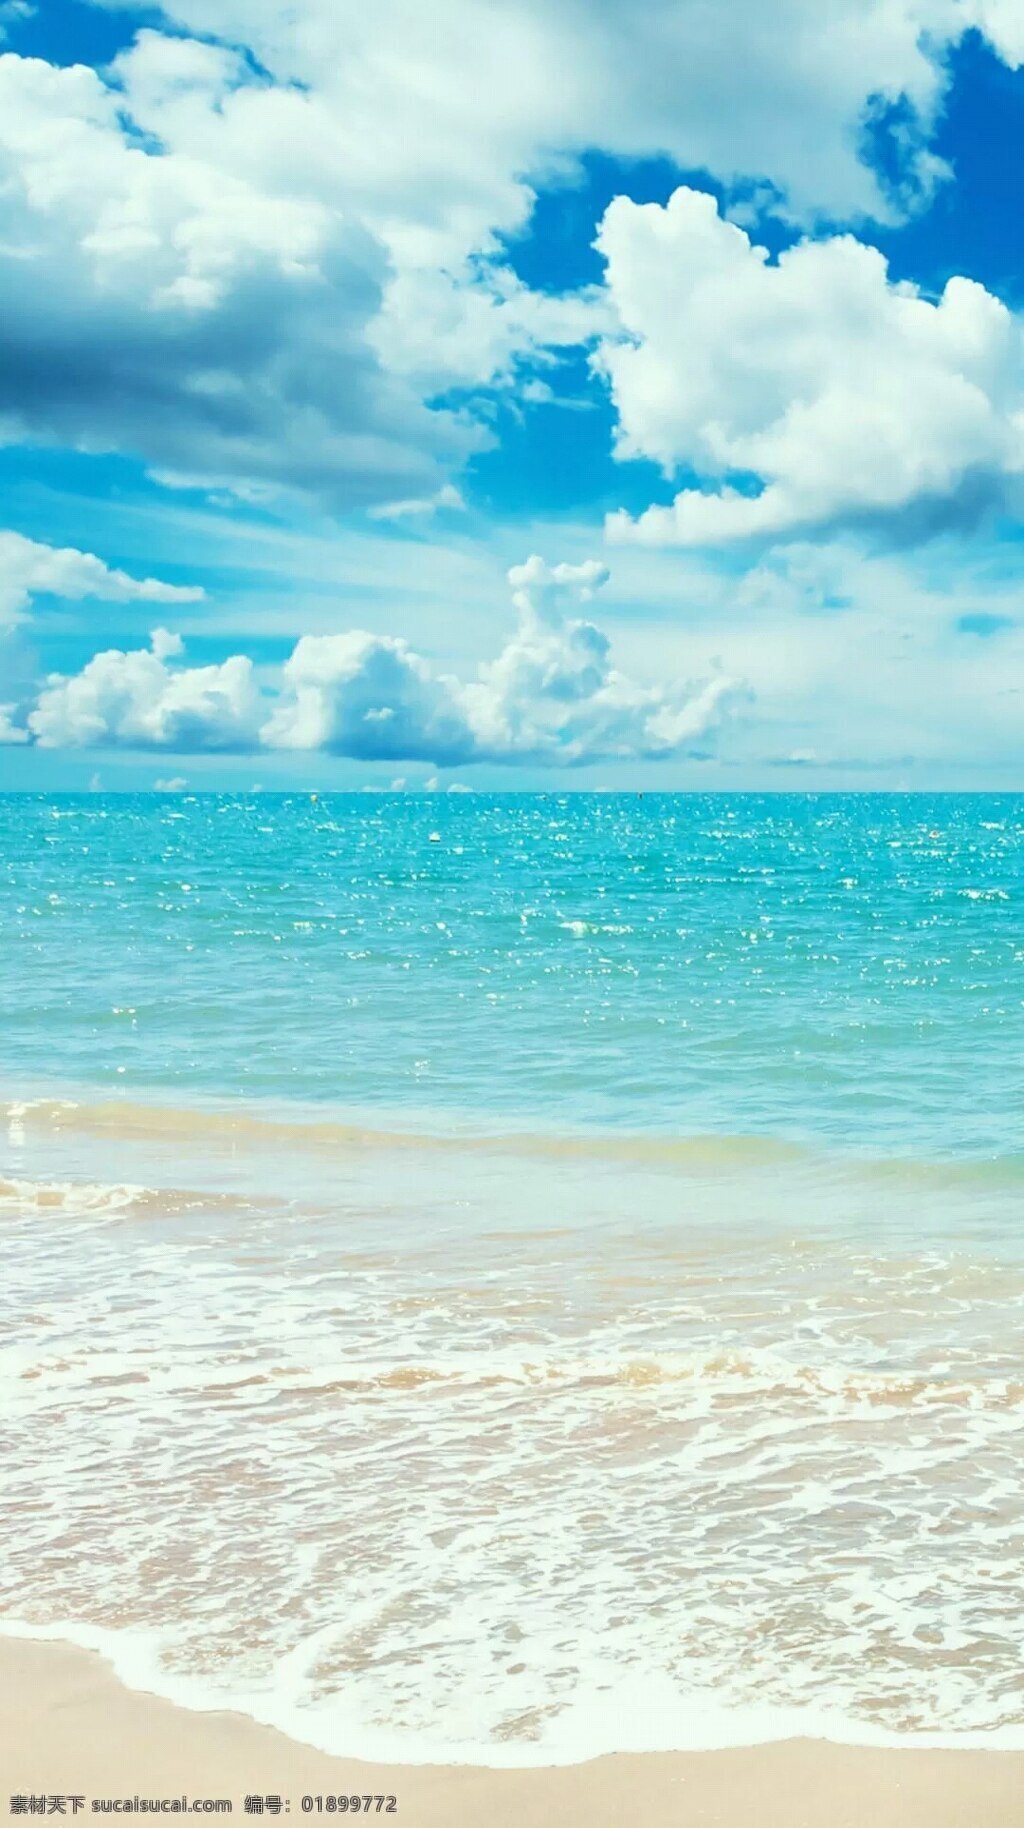 手机高清壁纸 蓝天白云 海洋沙滩 背景素材 时尚壁纸 创意壁纸